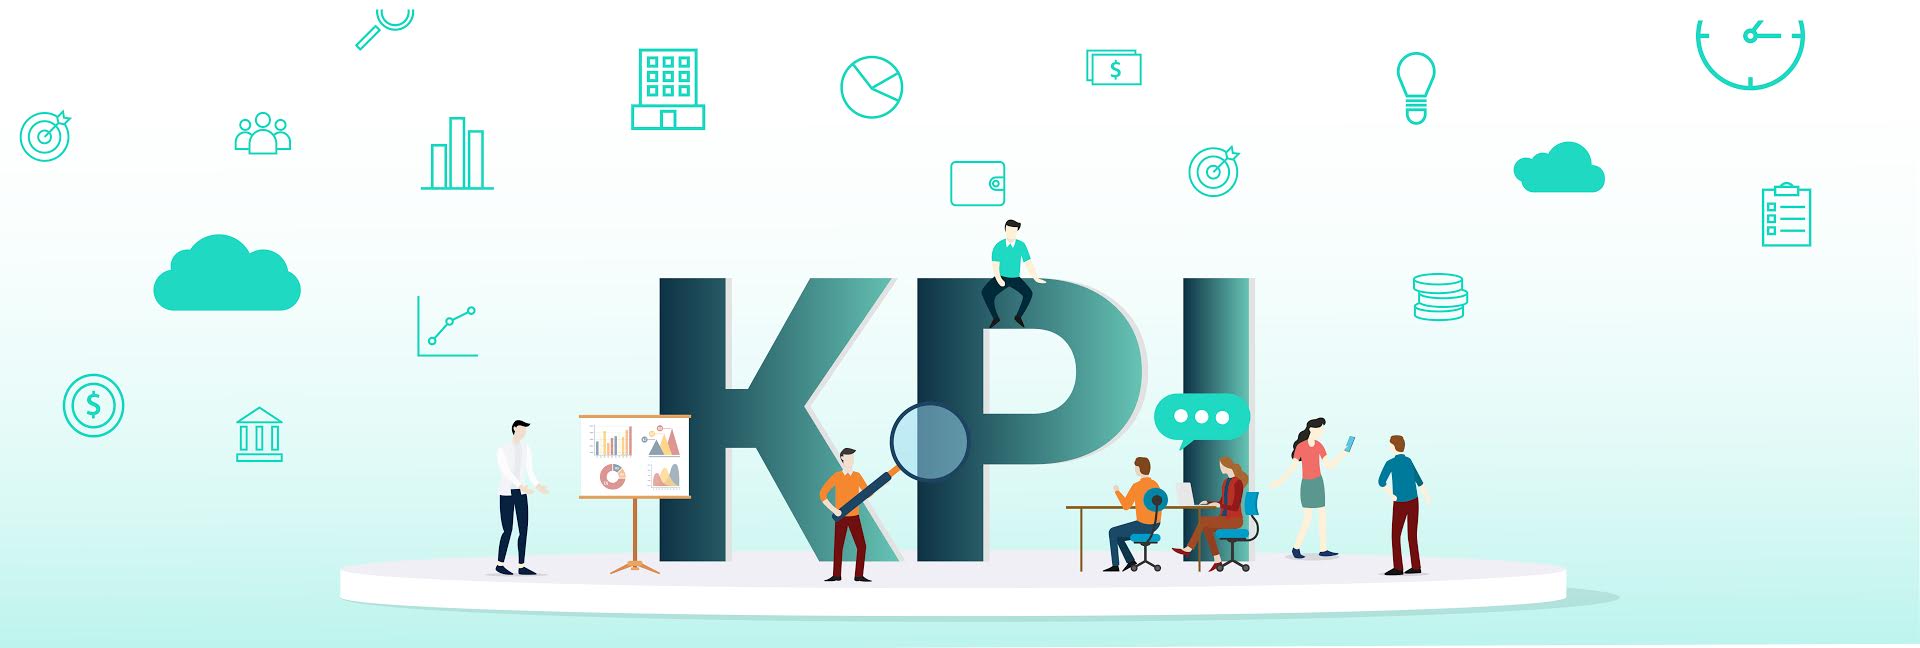 KPI là gì? Giải pháp đo lường hiệu suất tốt nhất dựa trên các mục tiêu kinh doanh chính.